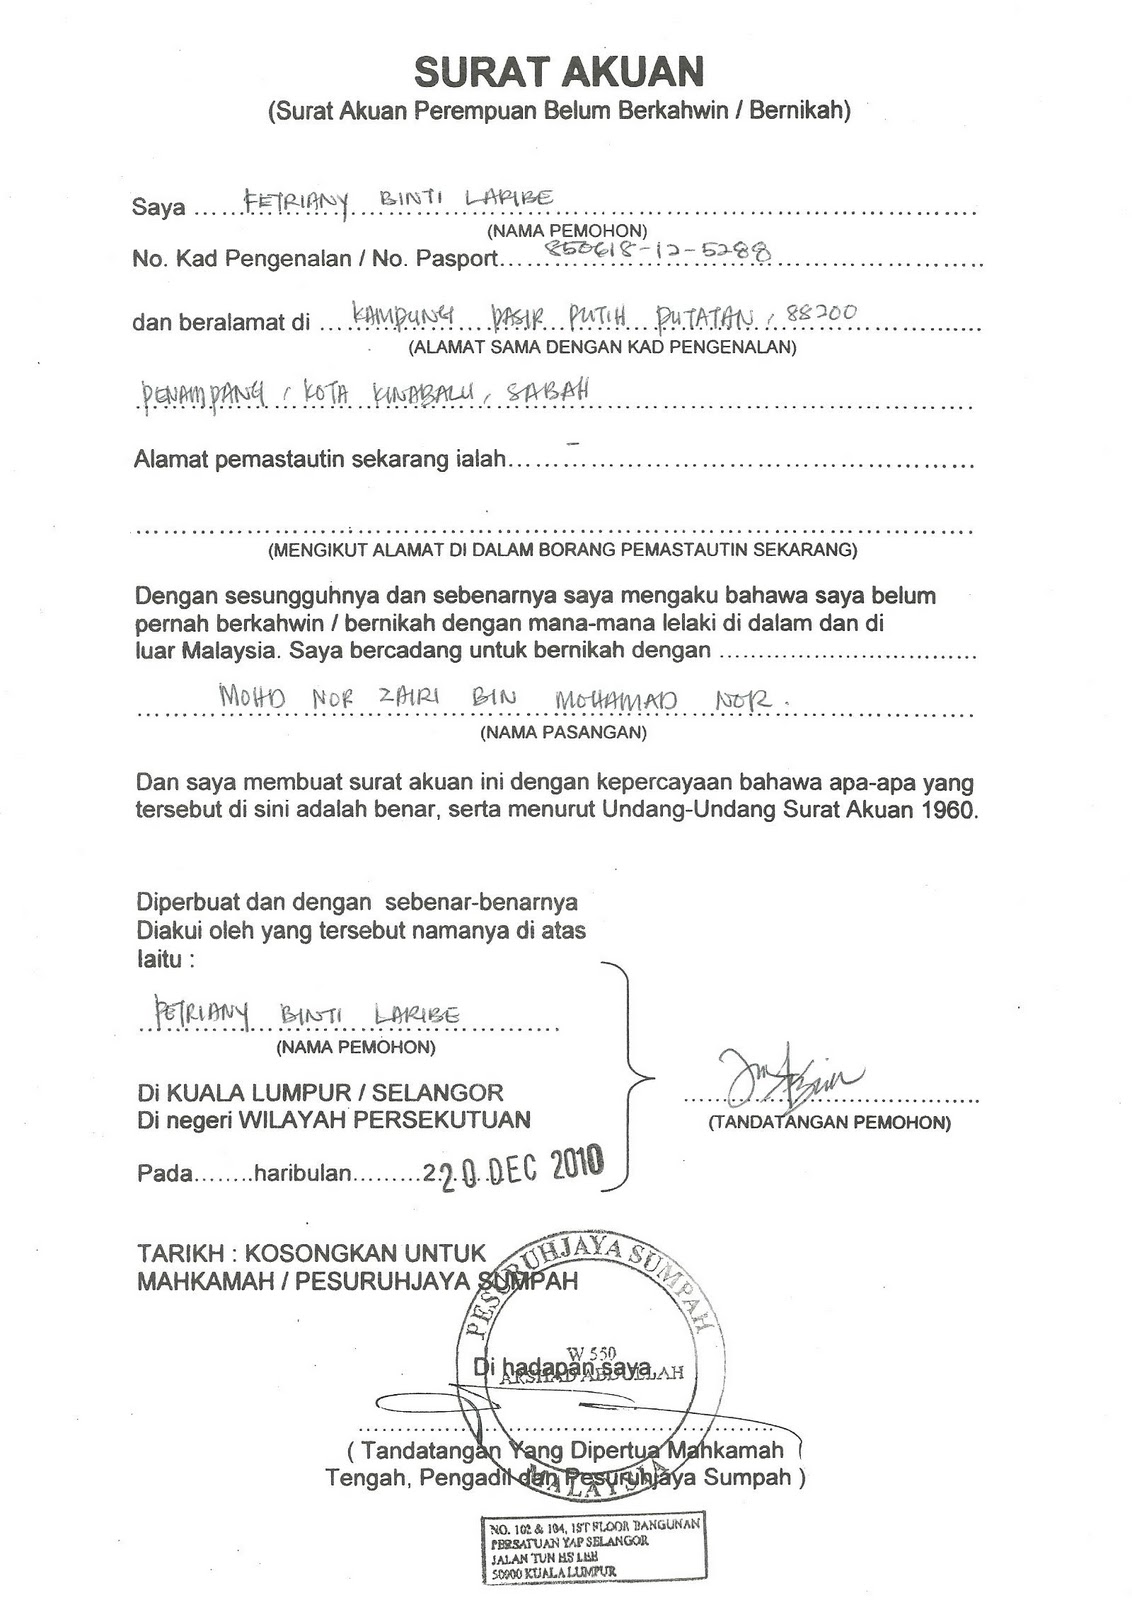 Contoh Surat Permohonan Ubahsuai Rumah Johor